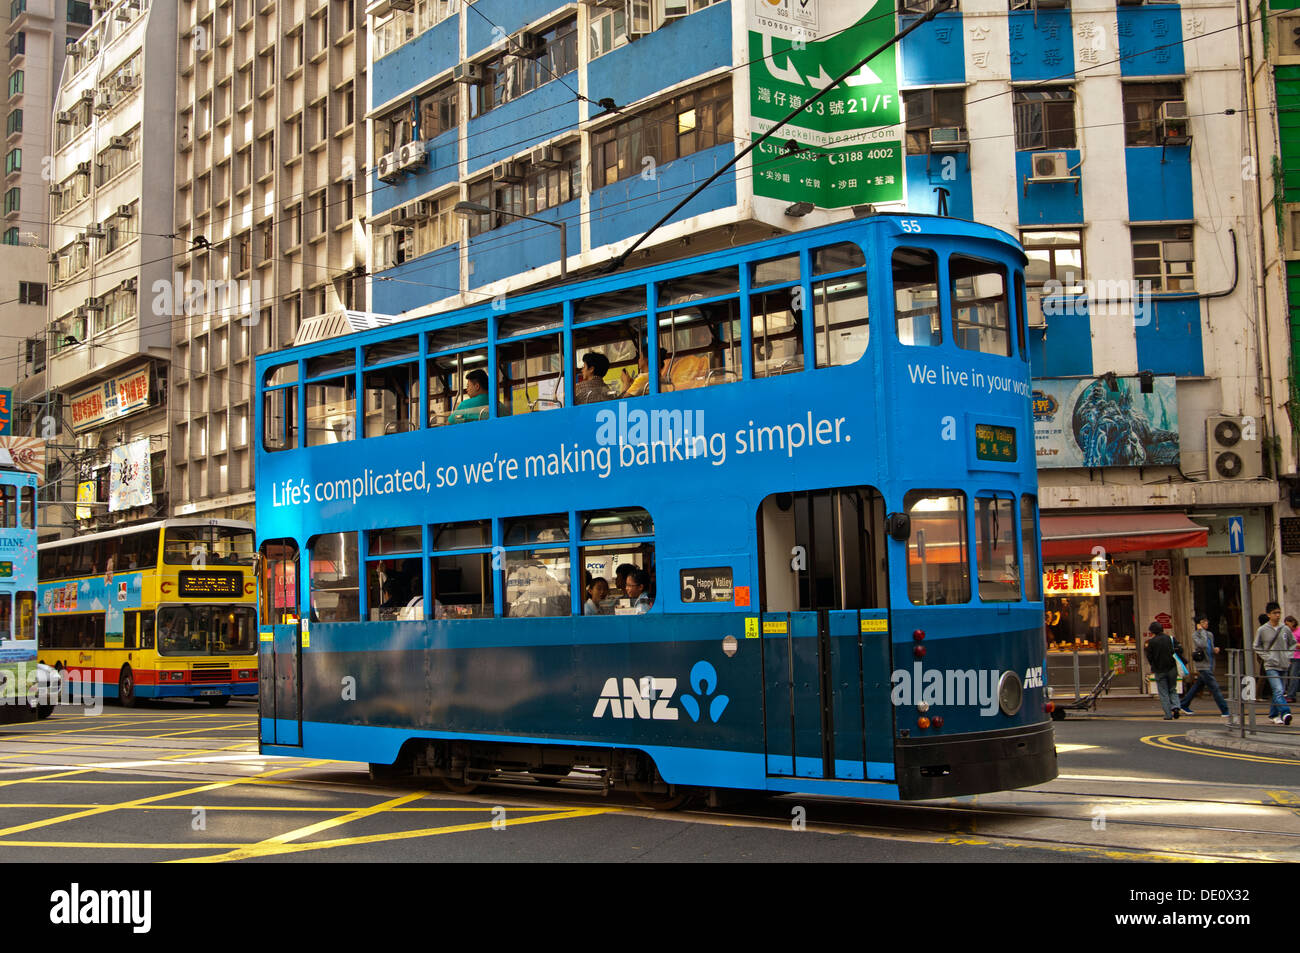 Doppio ponte di vettura tranviaria di Hong Kong con il tram tram corpo pubblicità per la banca ANZ, Hong Kong Foto Stock